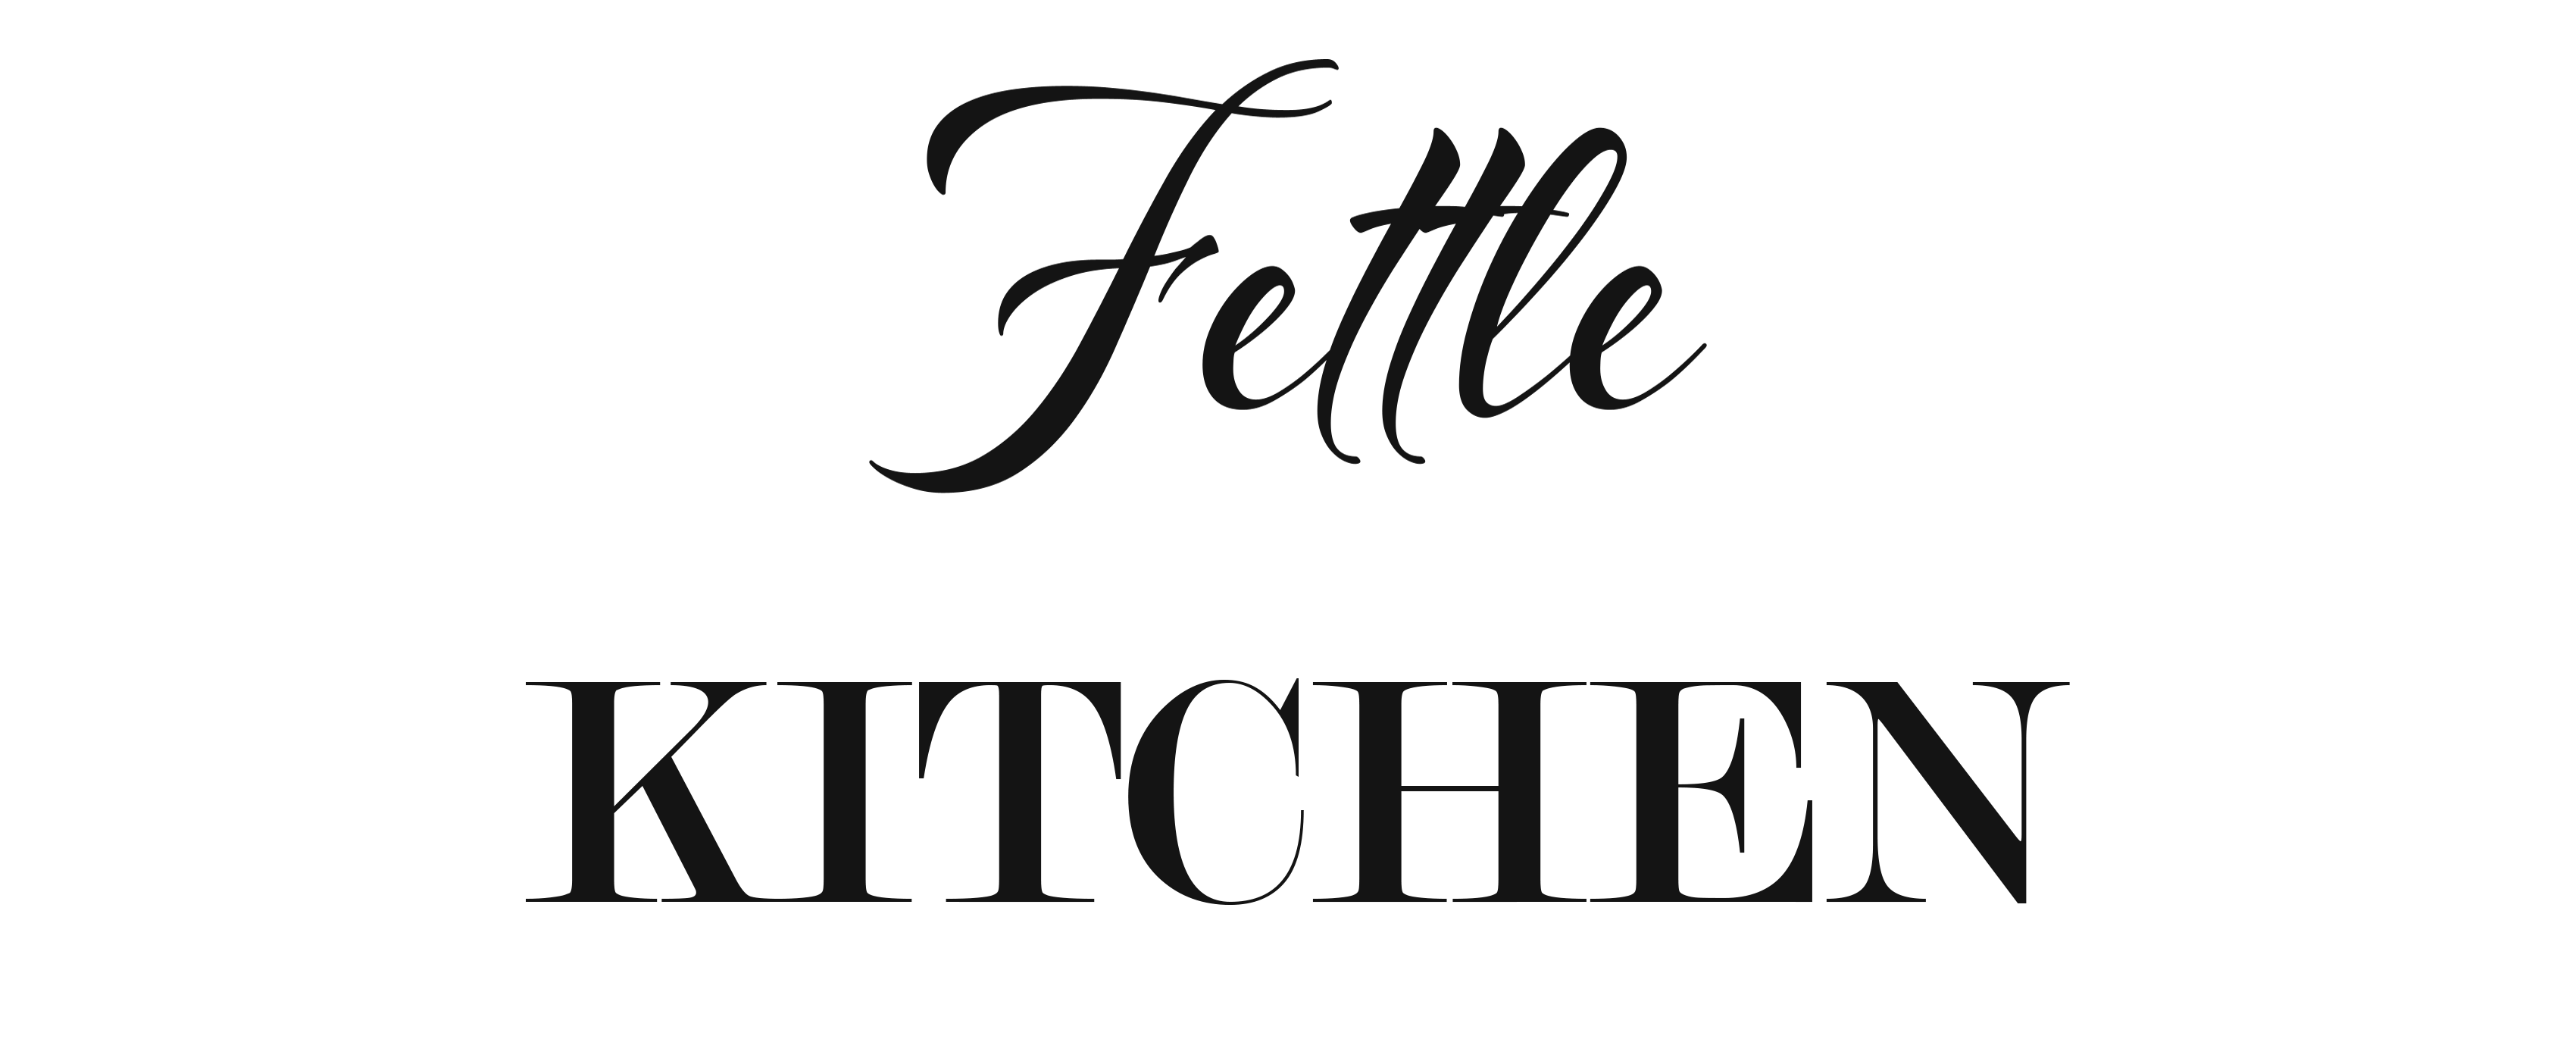 Fettle